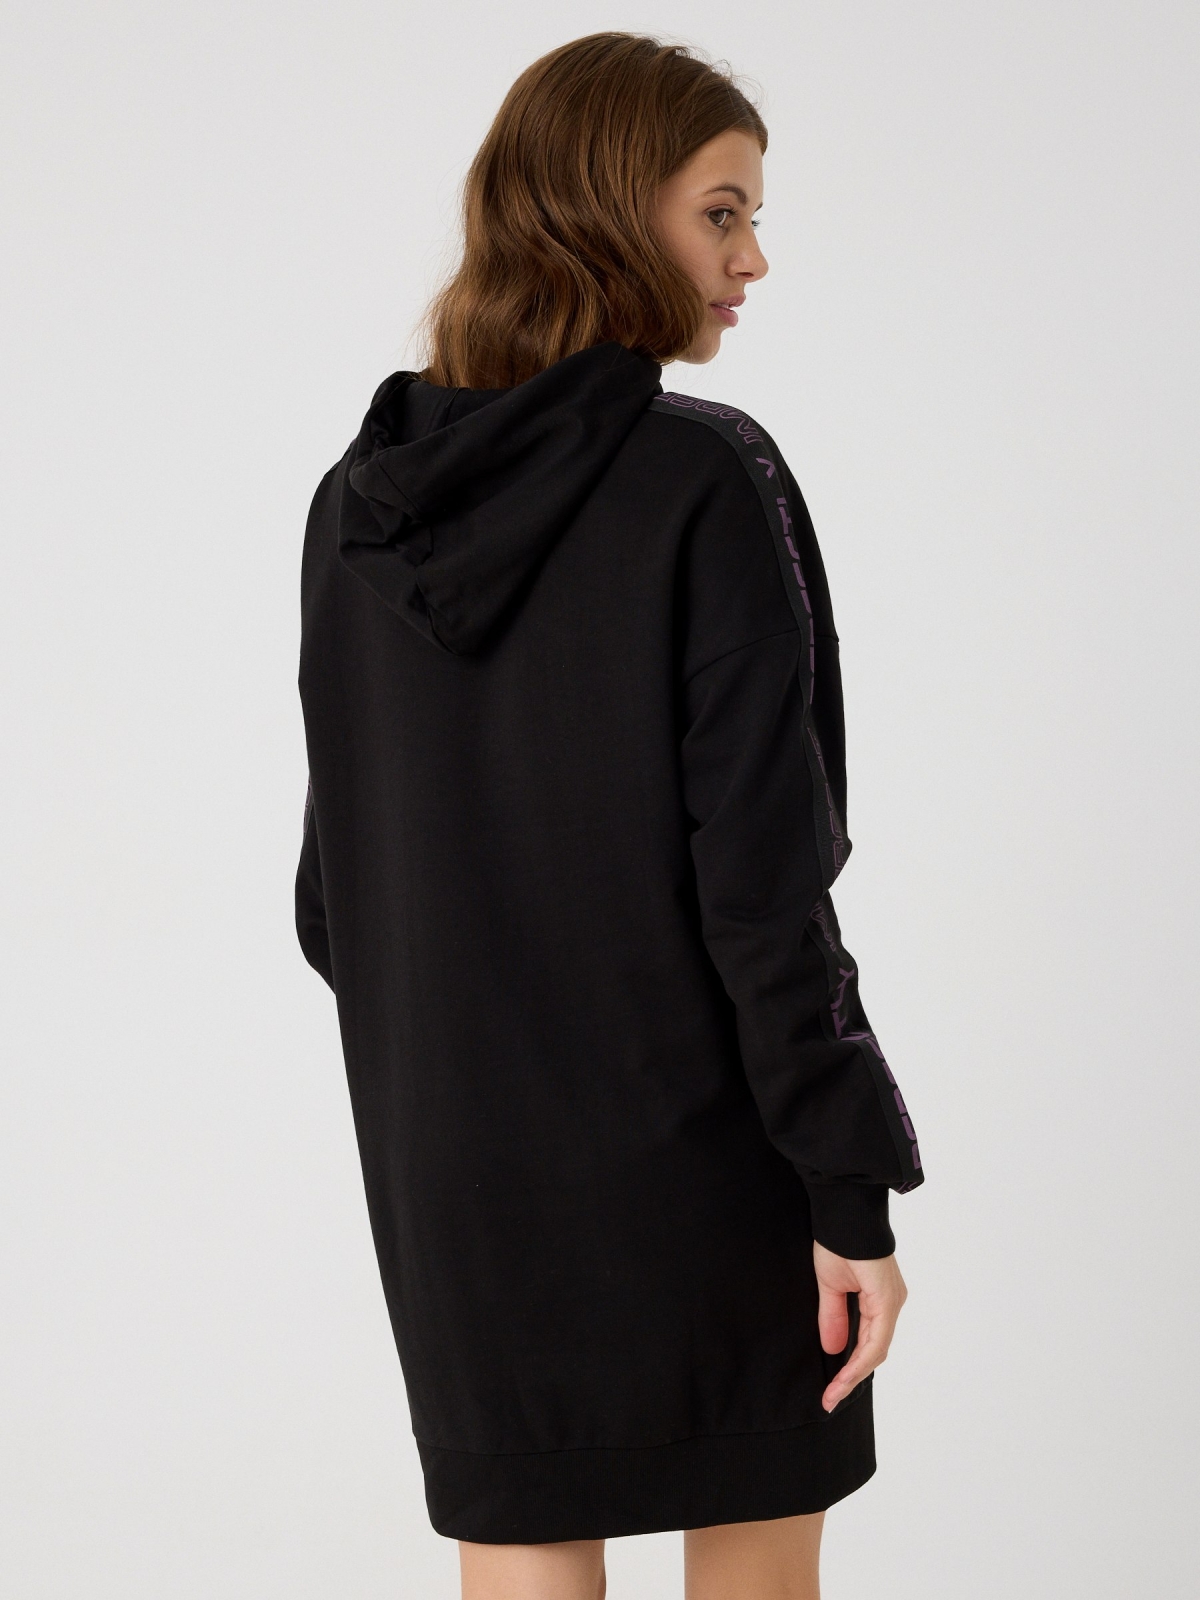 Sweatshirt comprida preto vista meia traseira